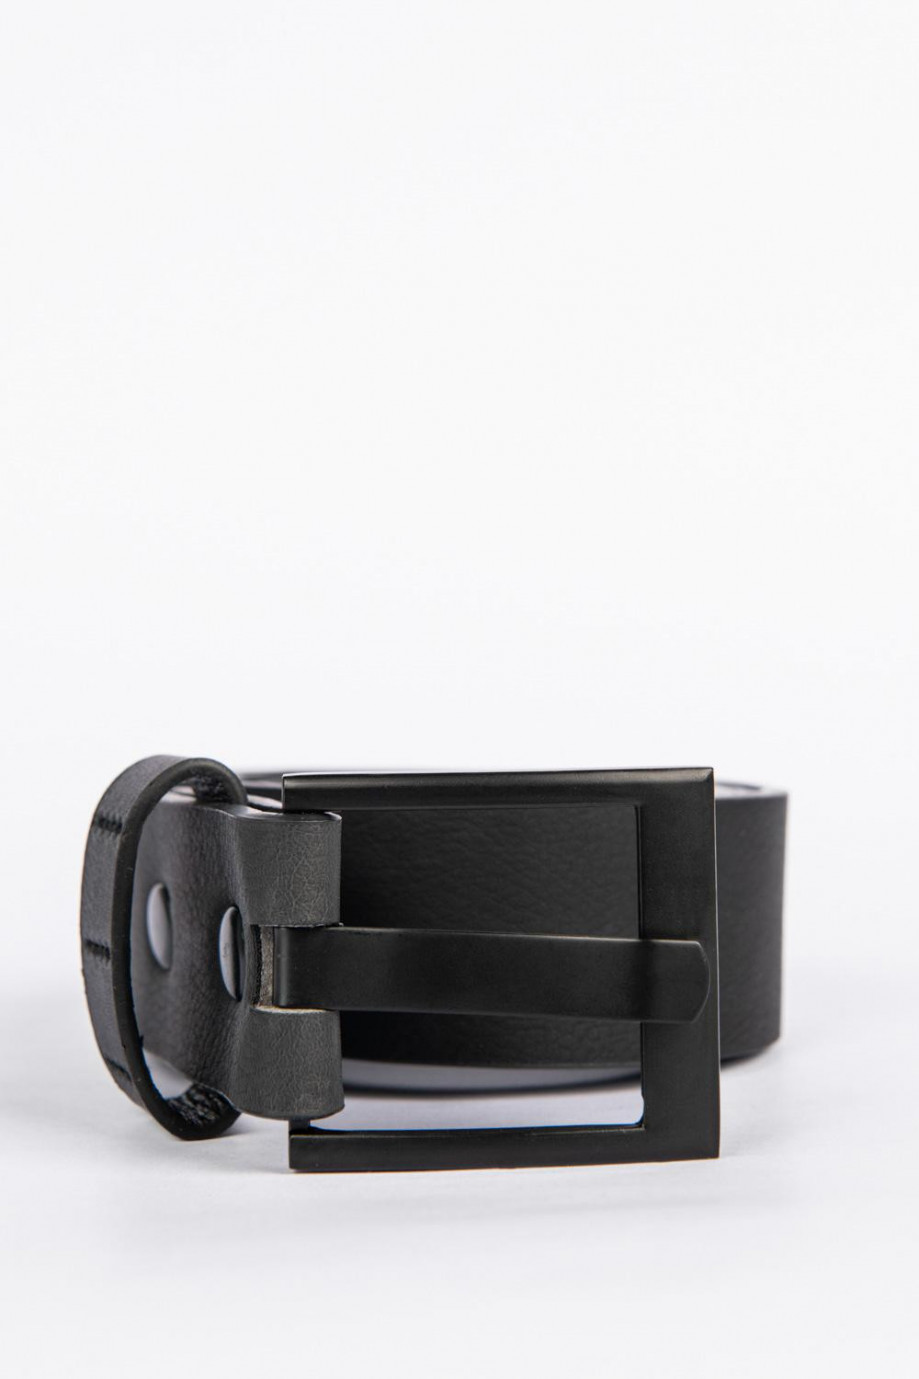 Este cinturón color negro para hombre es liso y tiene hebilla metálica cuadrada negra y esta hecho en sintetico, es exclusivo de